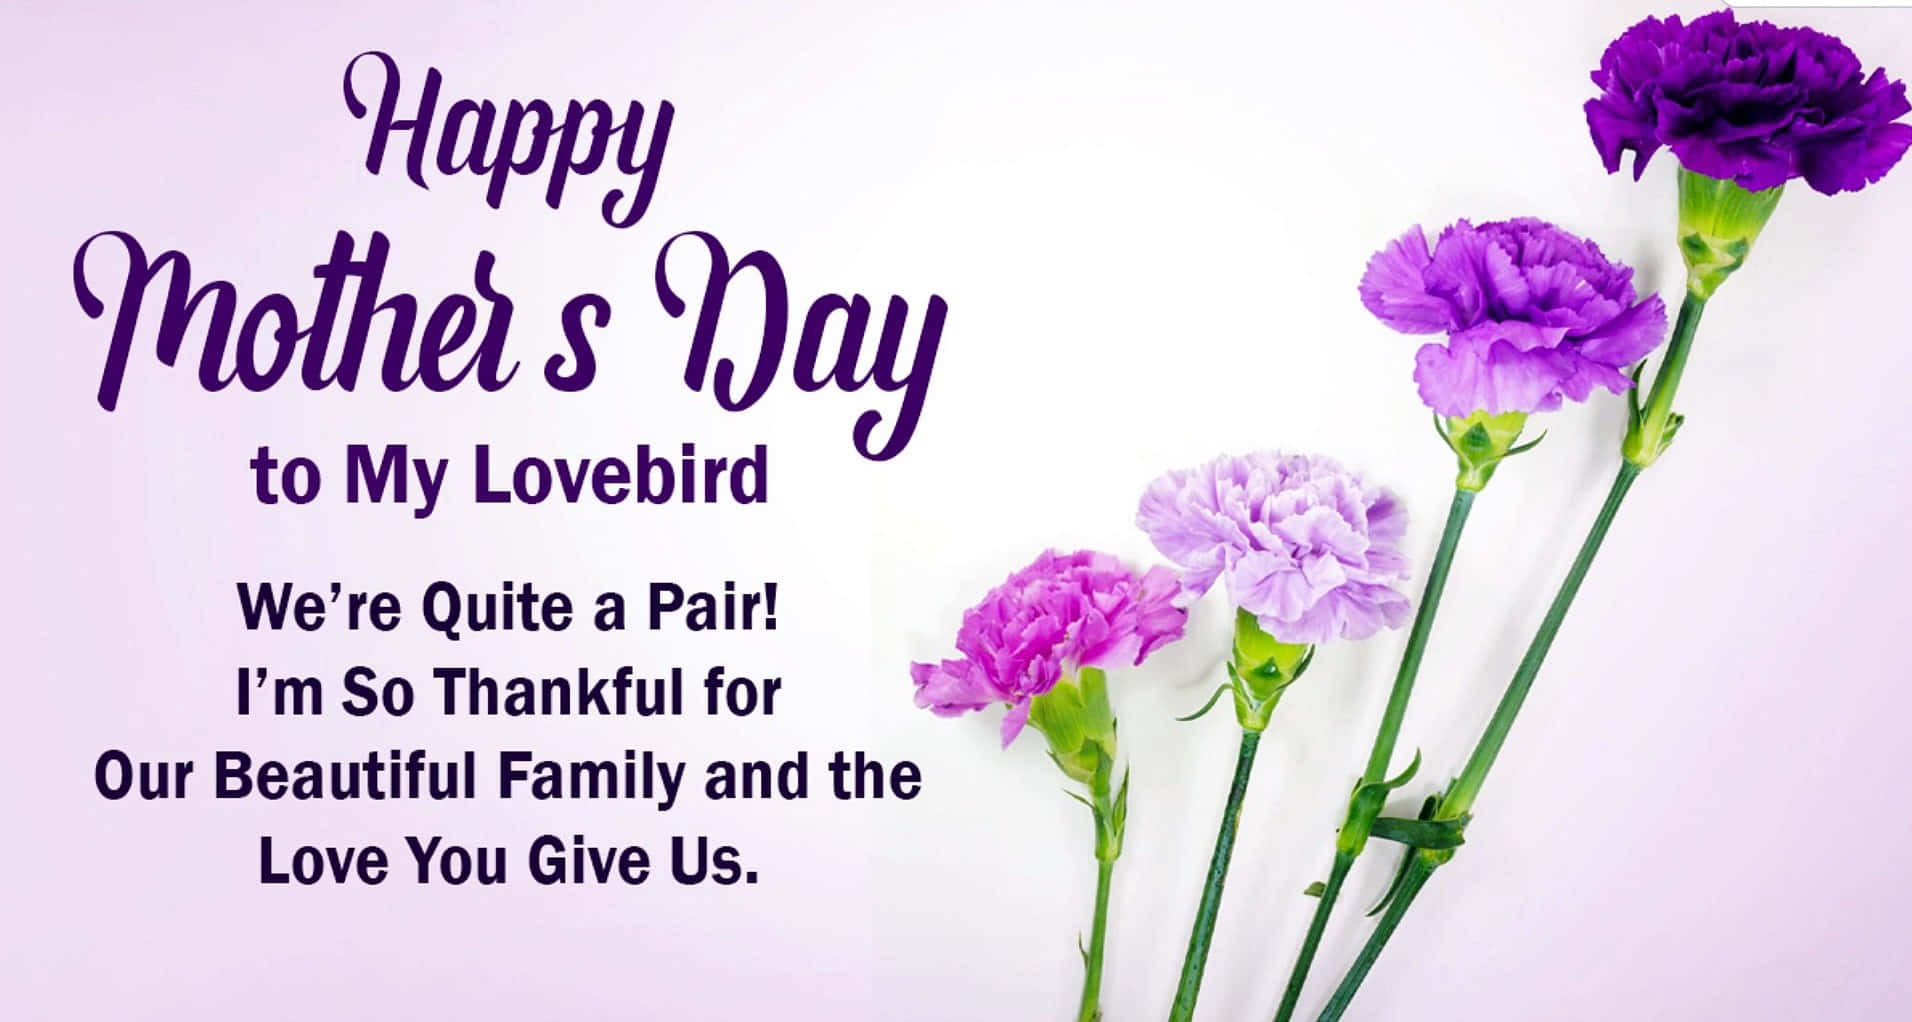 Morsdag Ønsker - Fejr Den Tidløse Forbindelse Mellem Moderlig Kærlighed Og Værdsættelse.